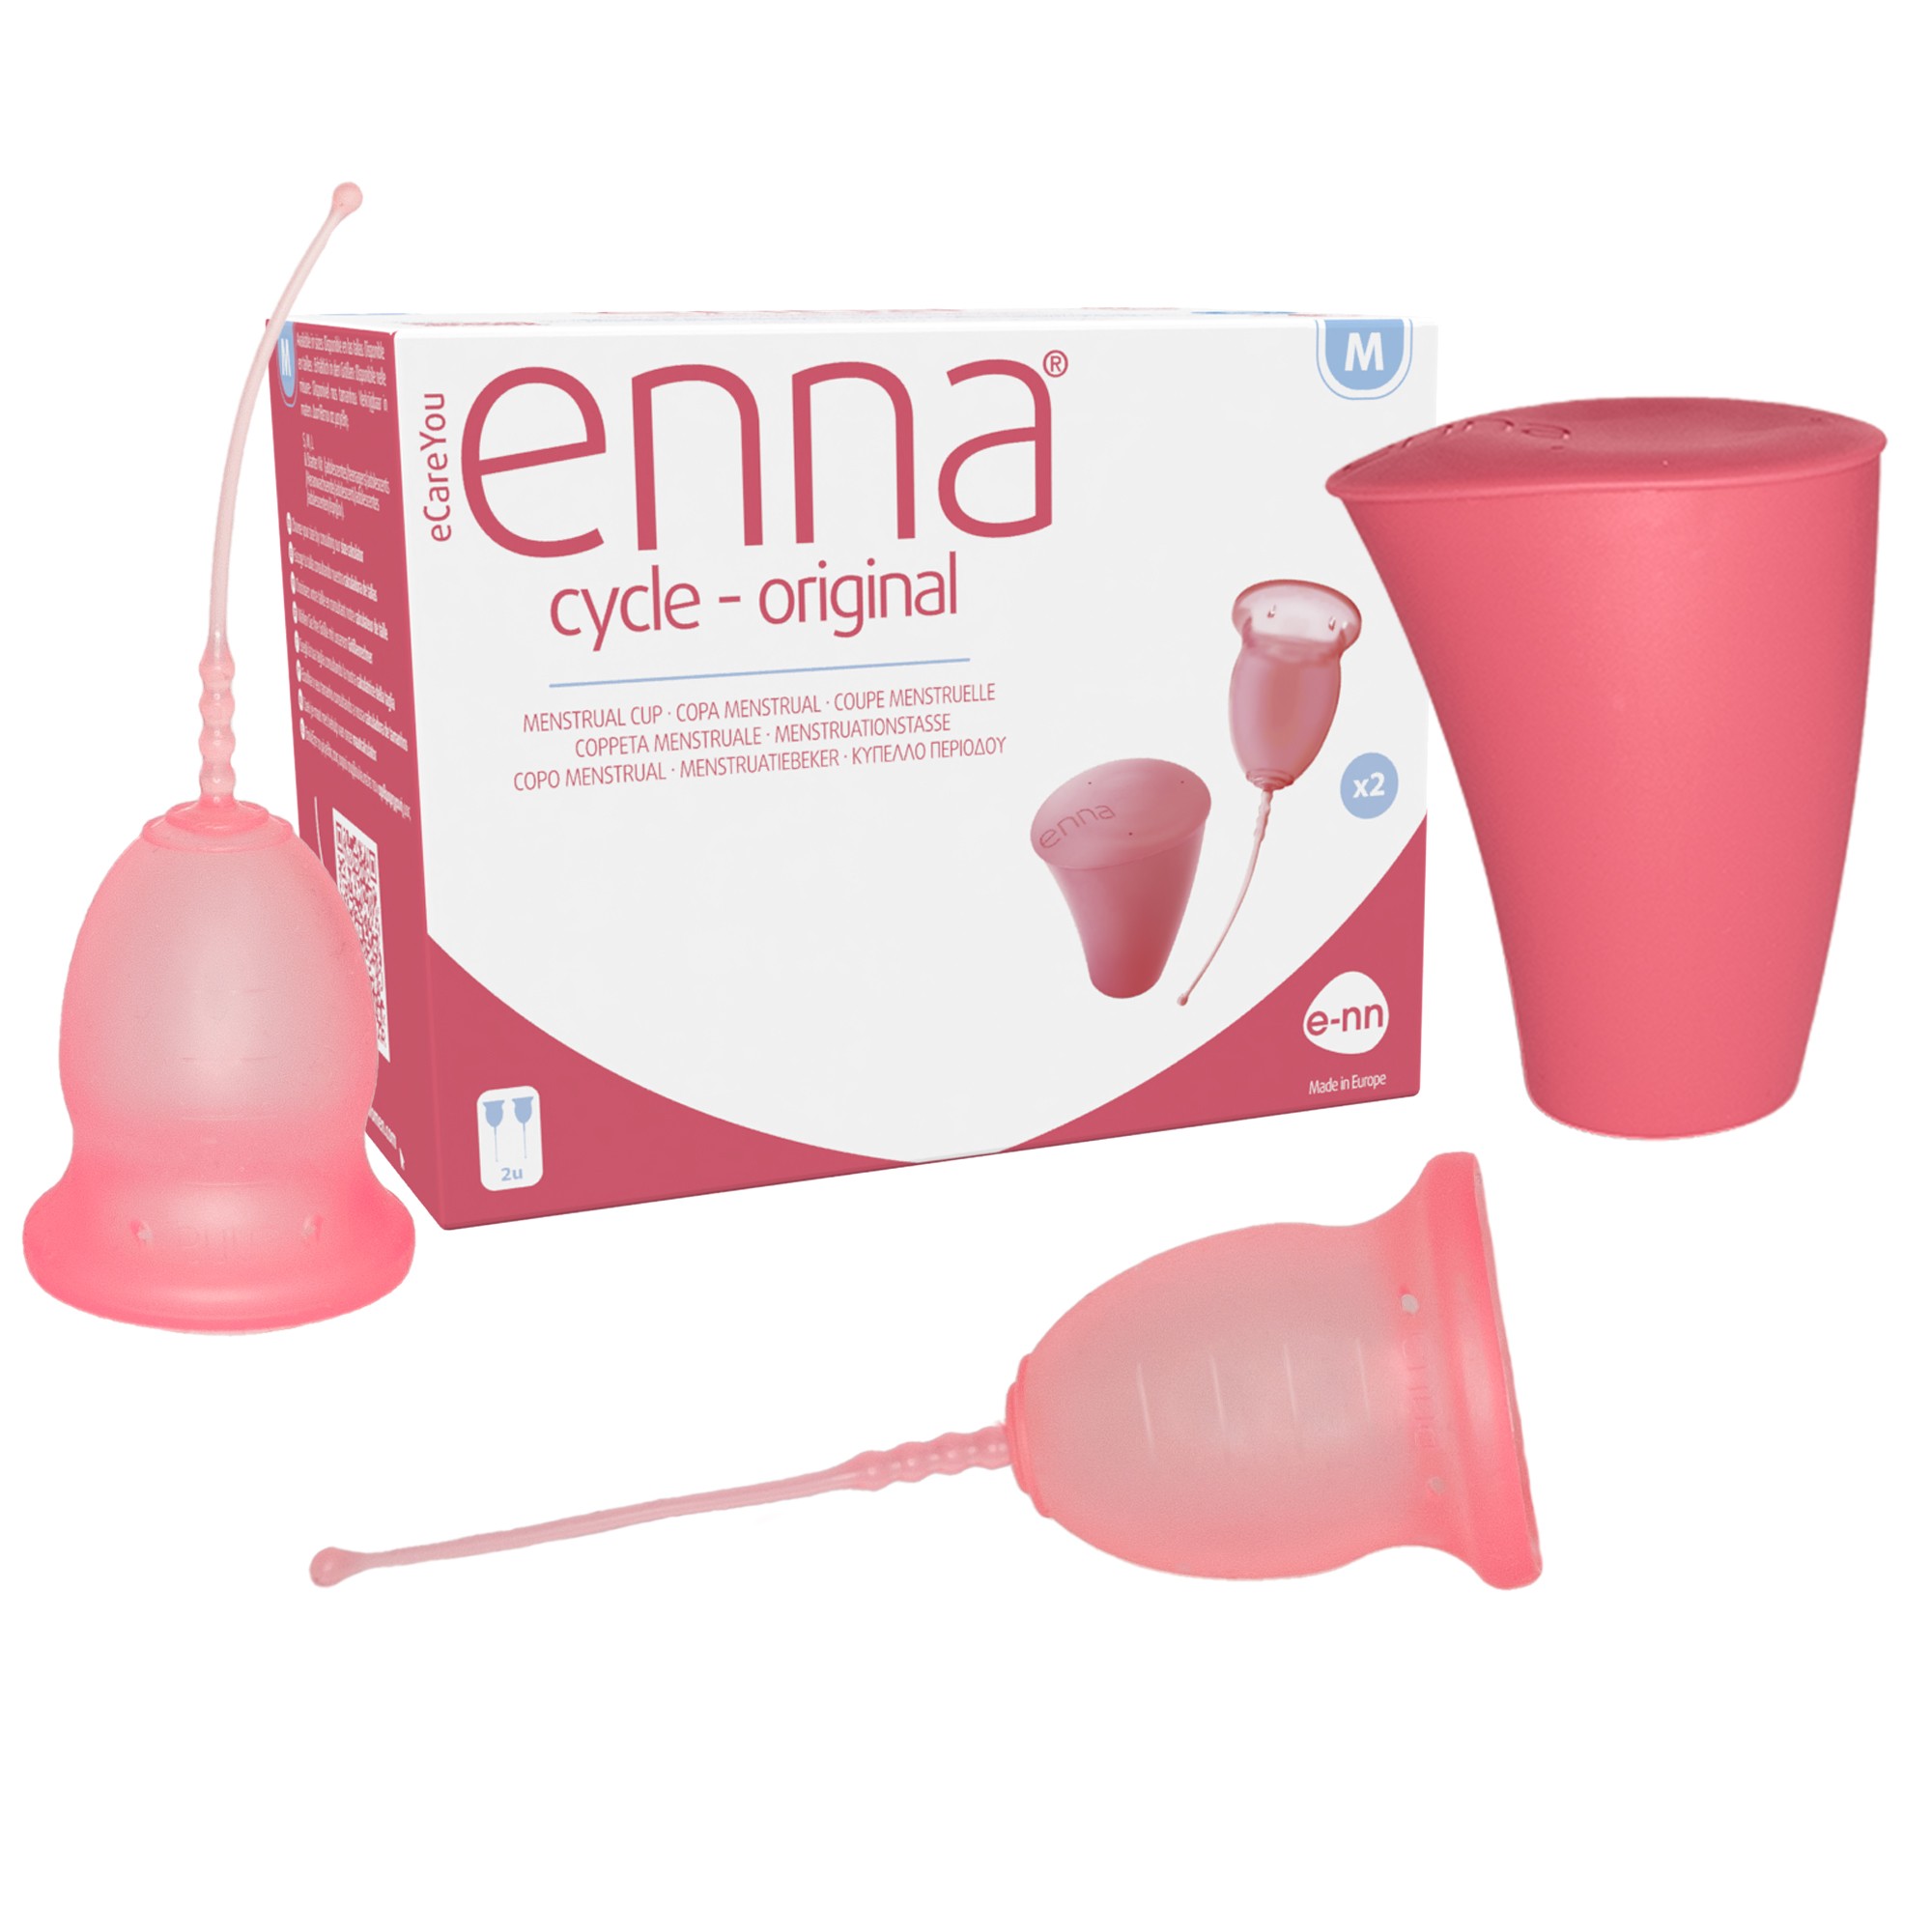 Copa Menstrual Enna®